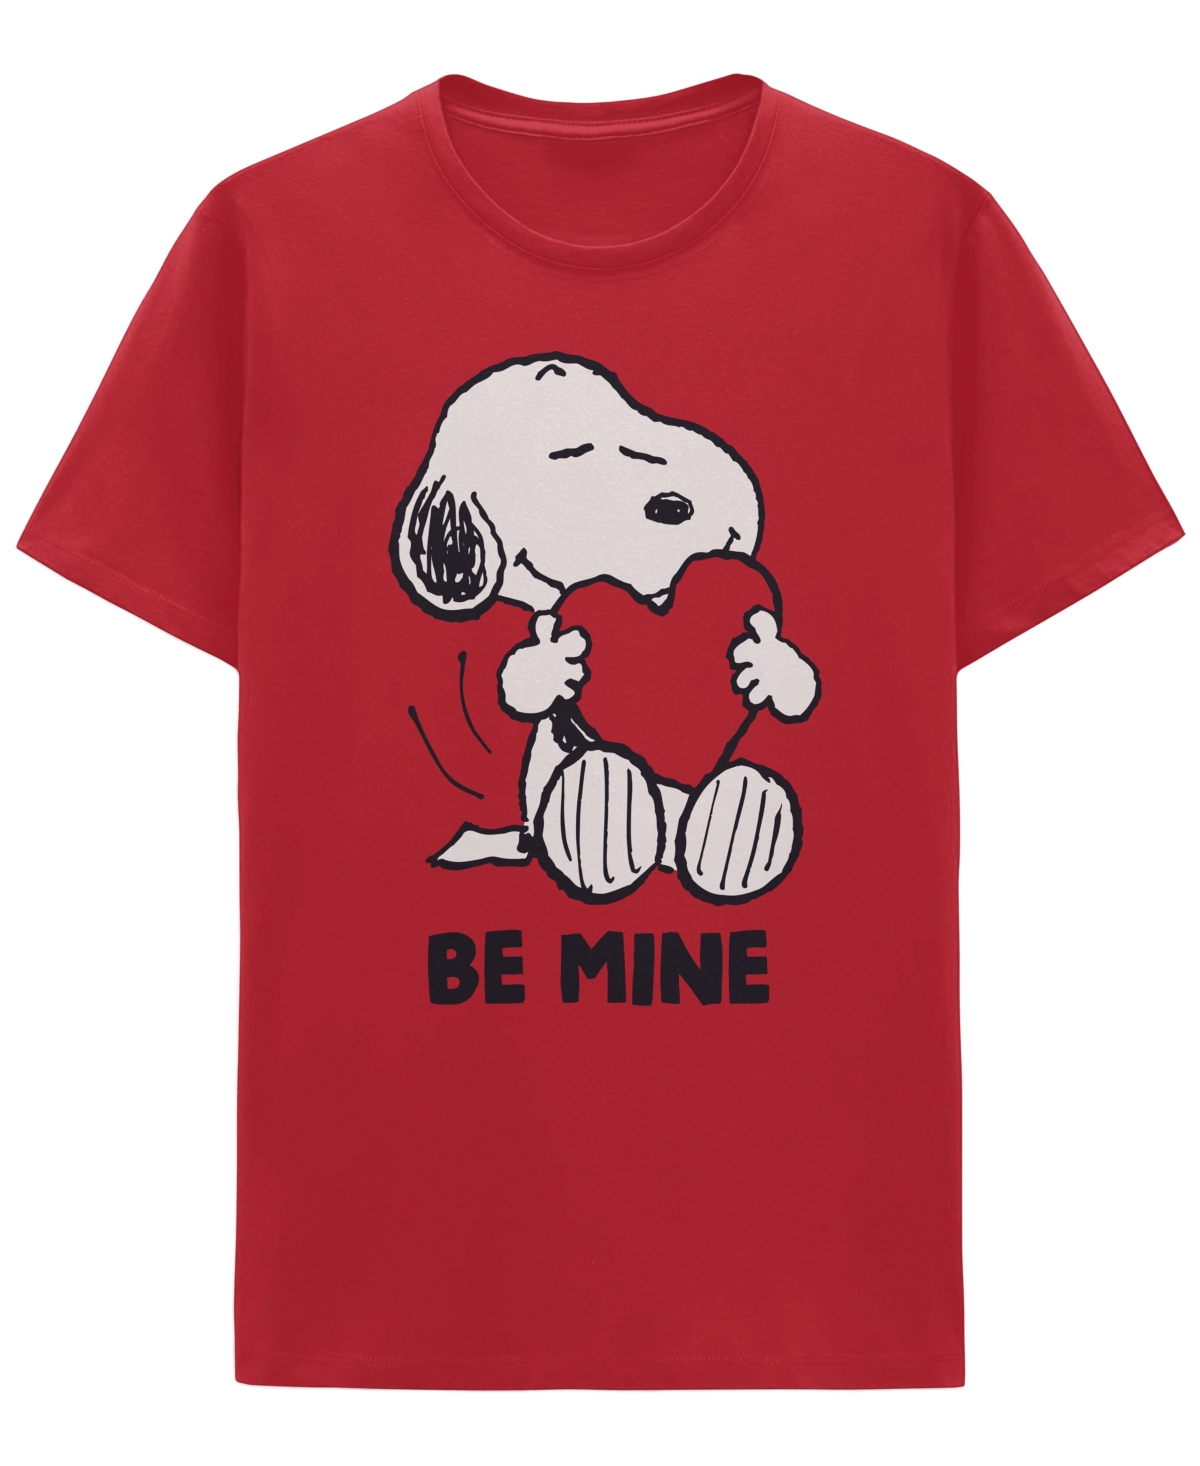 Peanuts Men's Short Sleeve T-shirt - Red